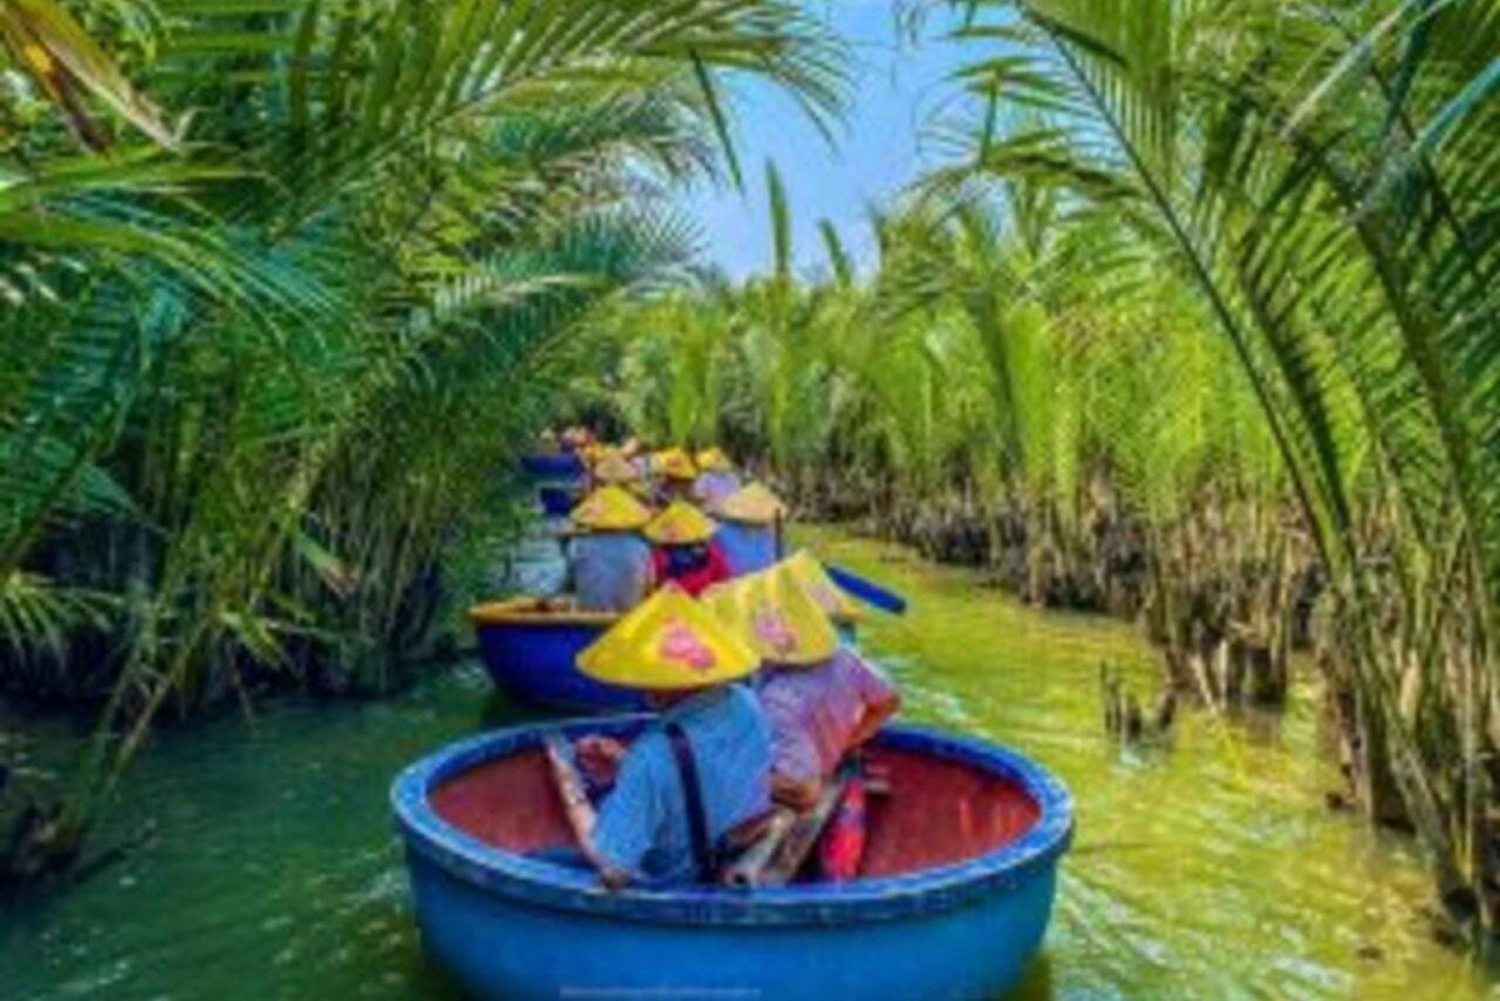 Hoi An: Paseo en barco con cestas de bambú por el bosque de cocoteros de Bay Mau